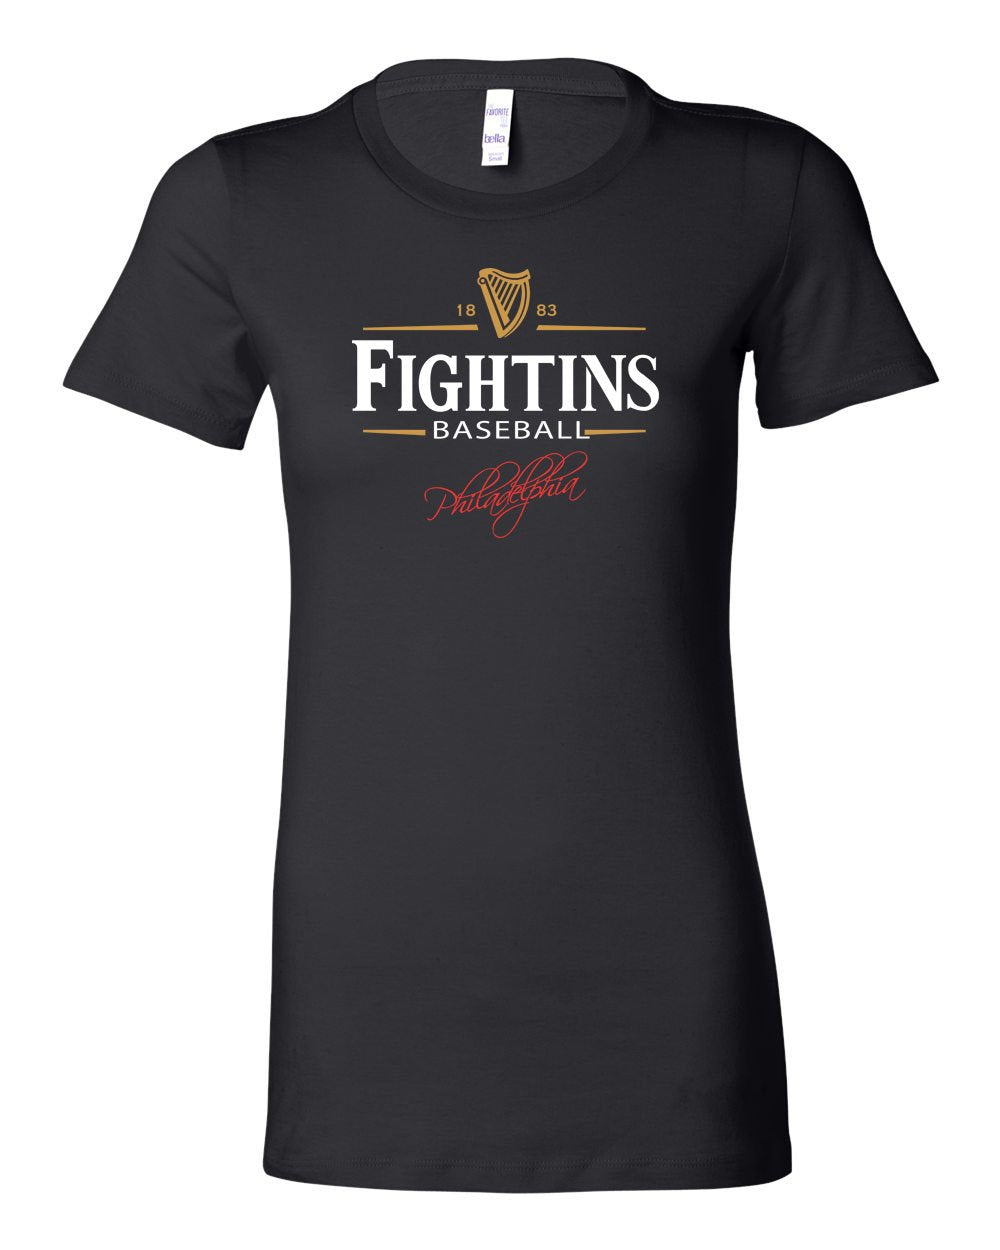 Fightin's Beer LADIES Junior-Fit T-Shirt